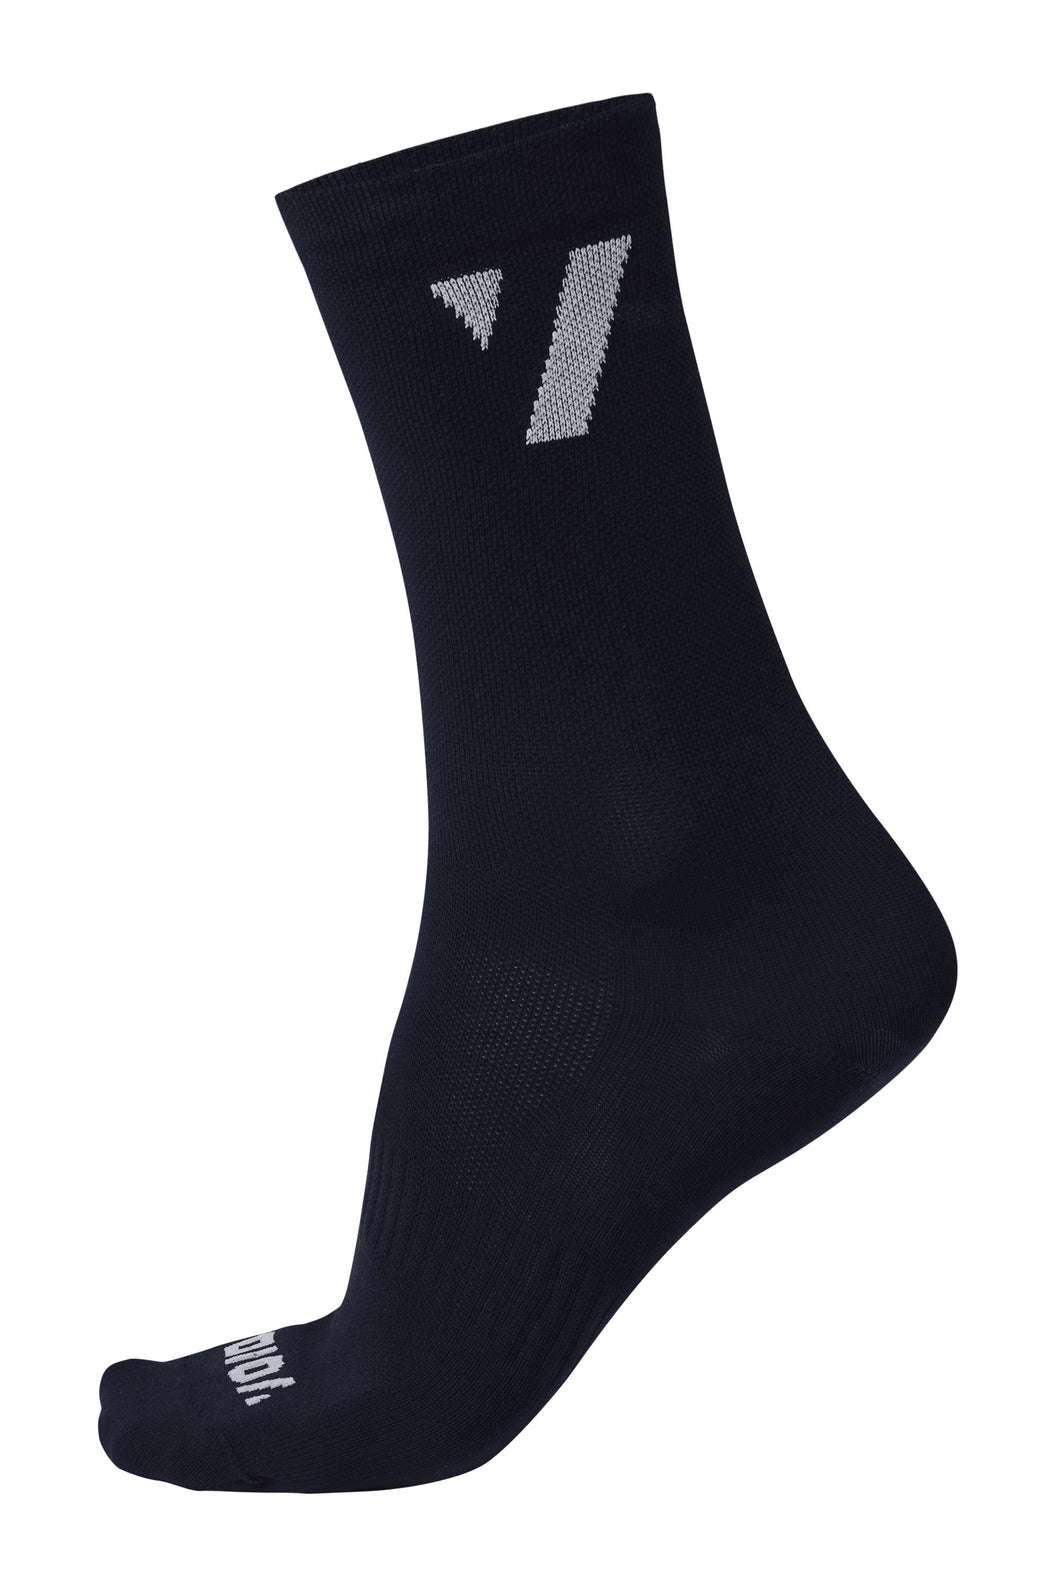 VOID Performance Socks 16 - Black